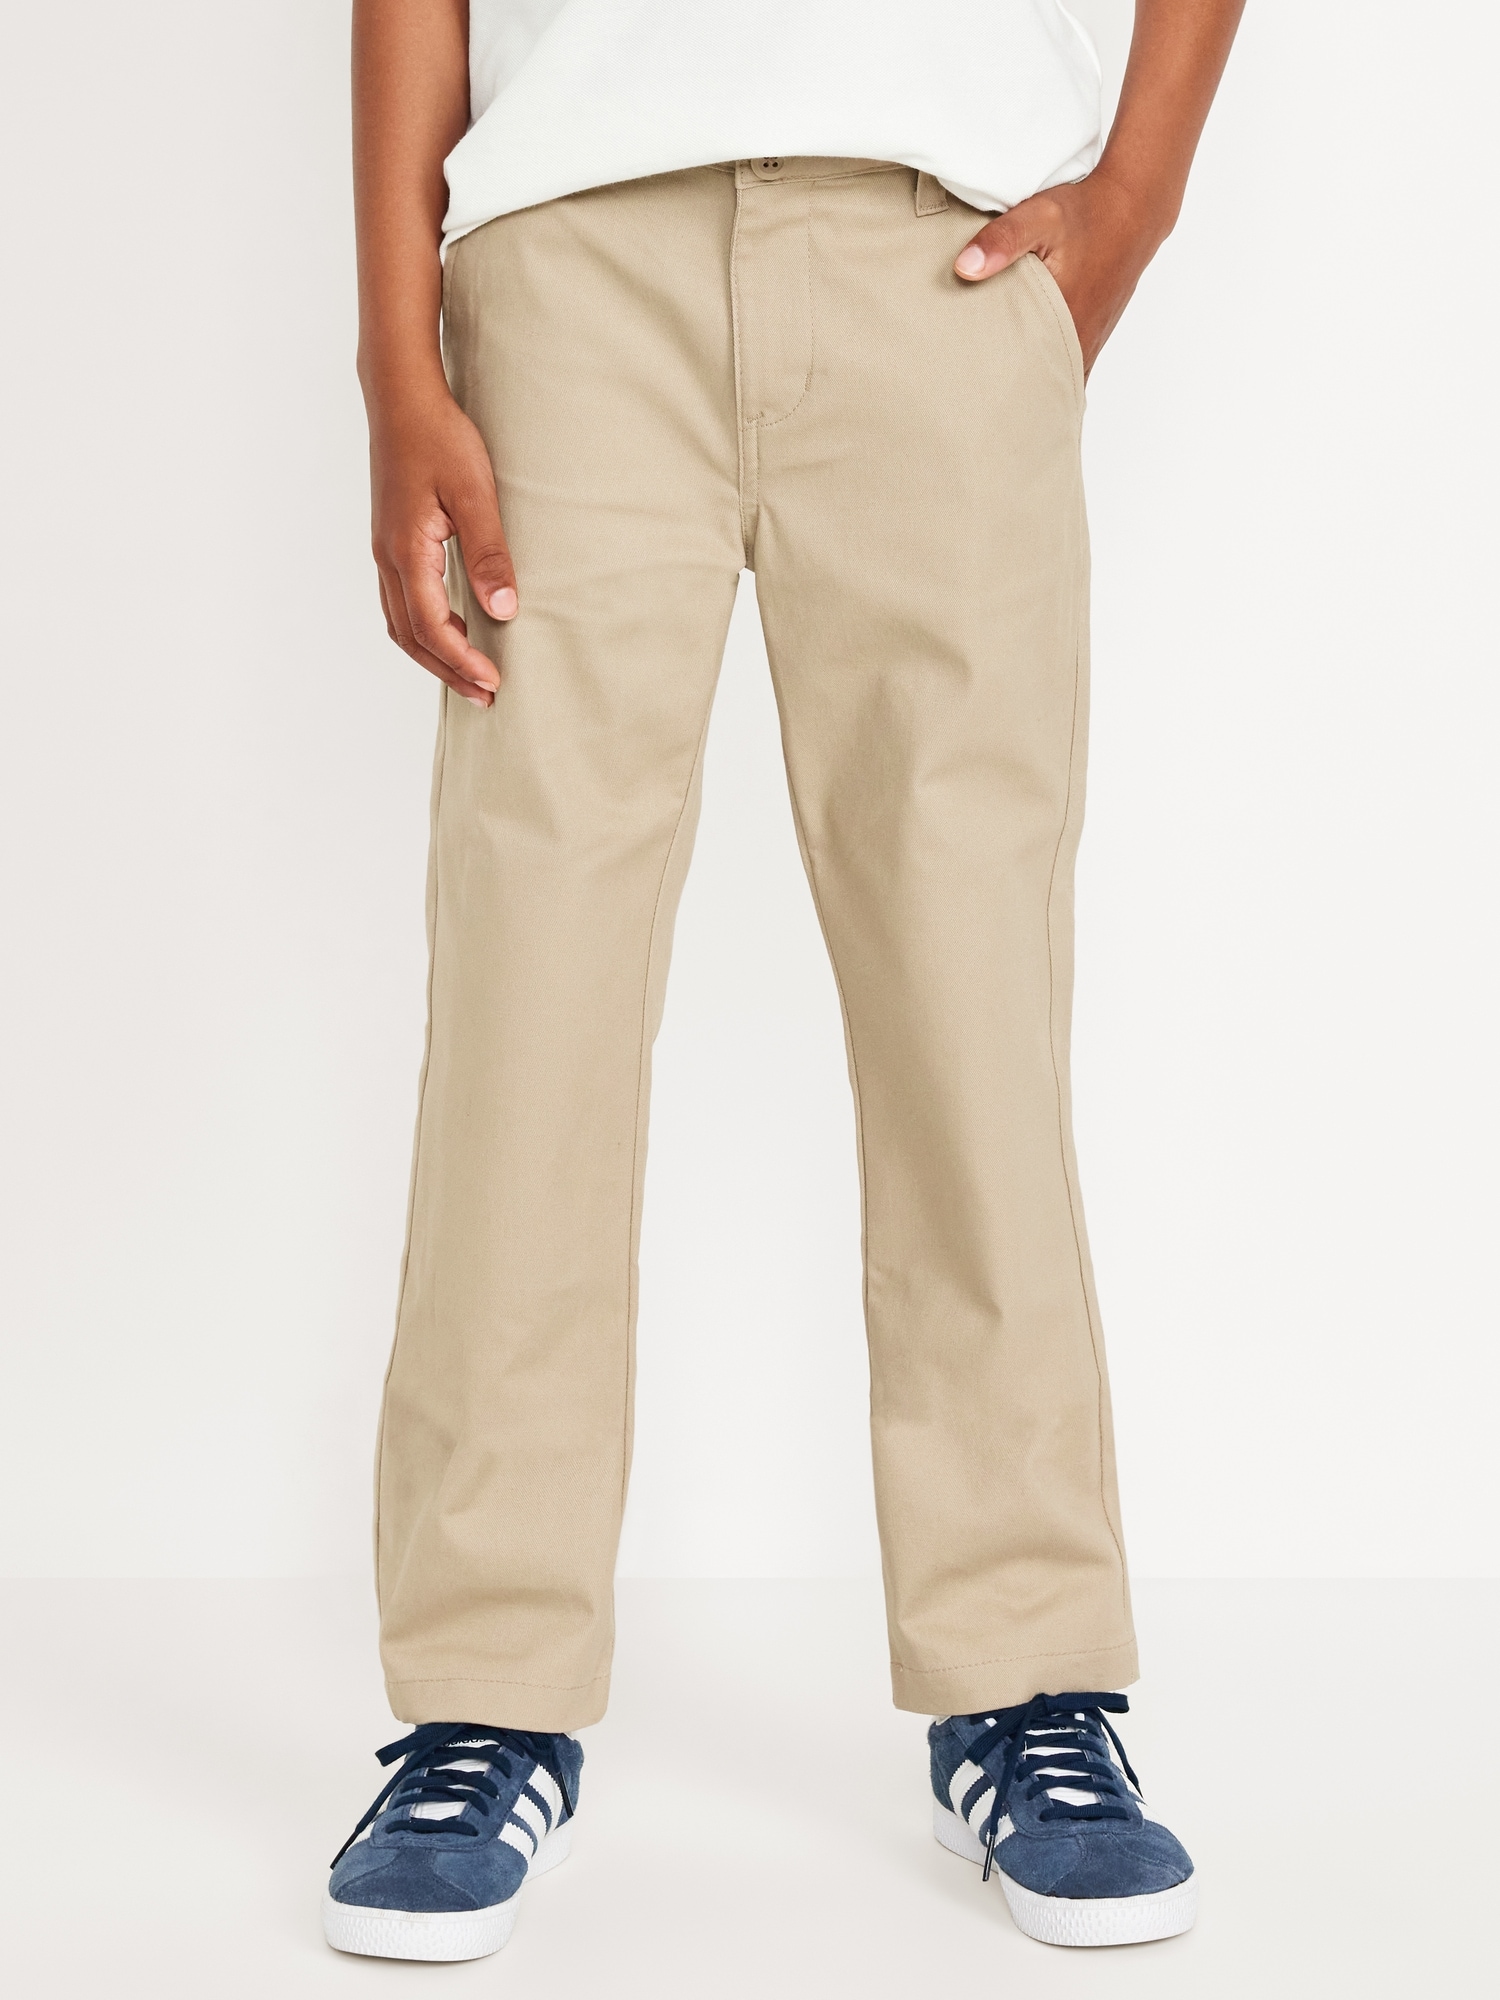 Slim School Uniform Chino Pants for Boys